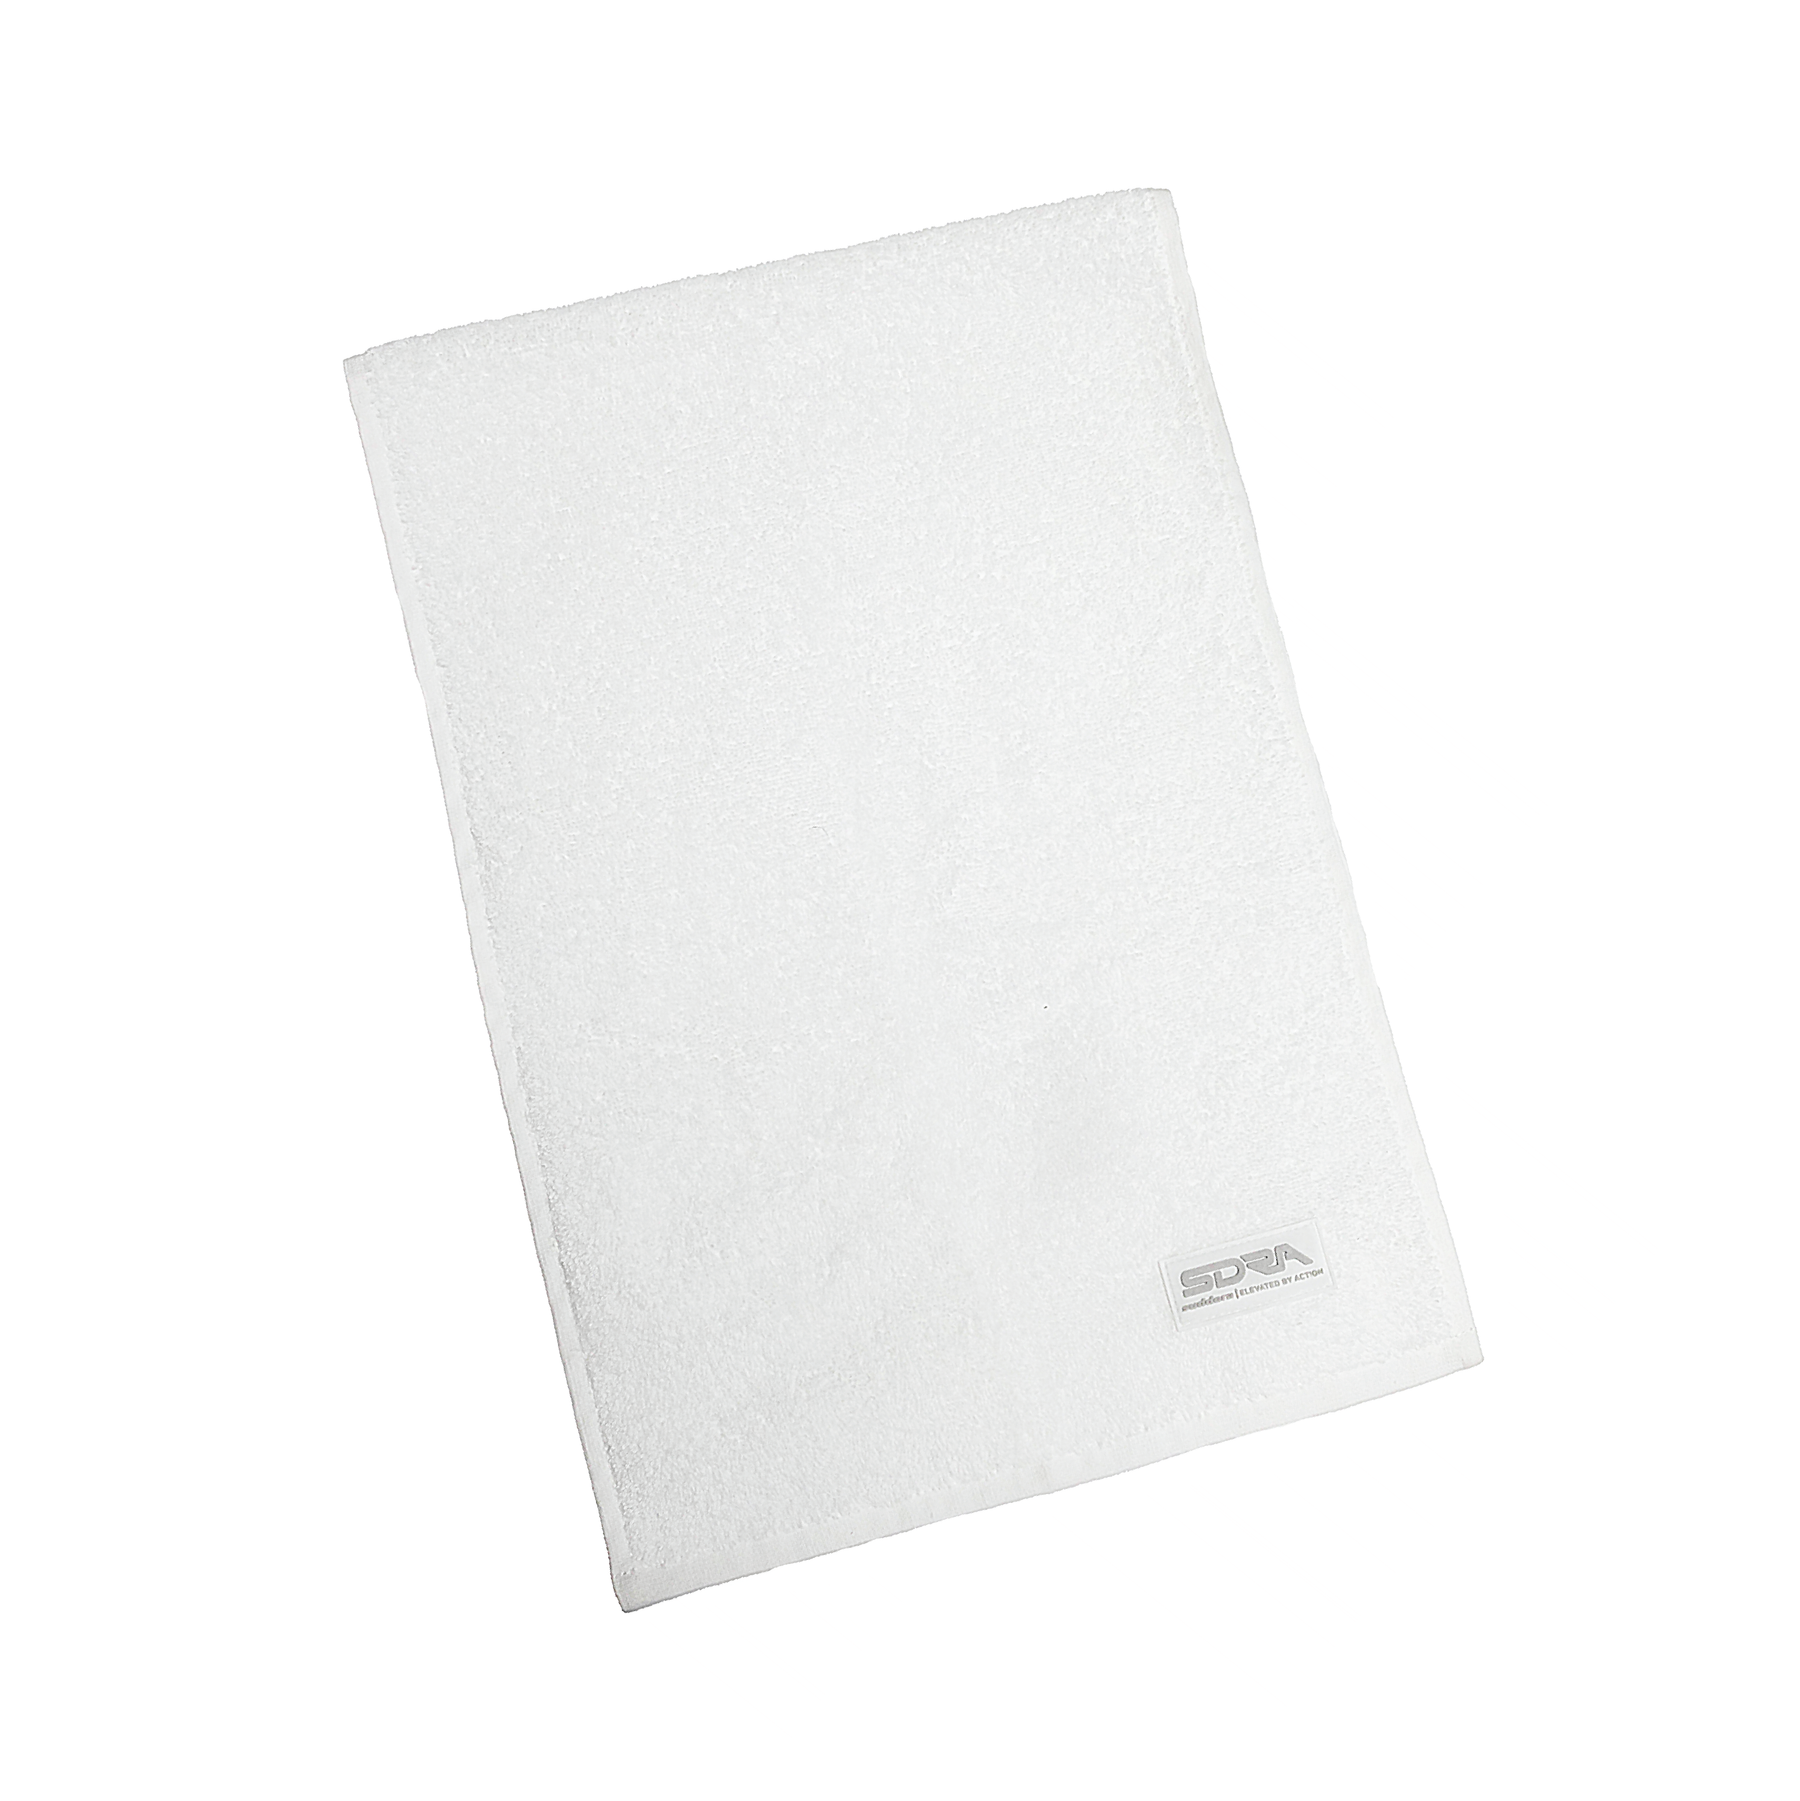 Premium Cotton Sweat Towel